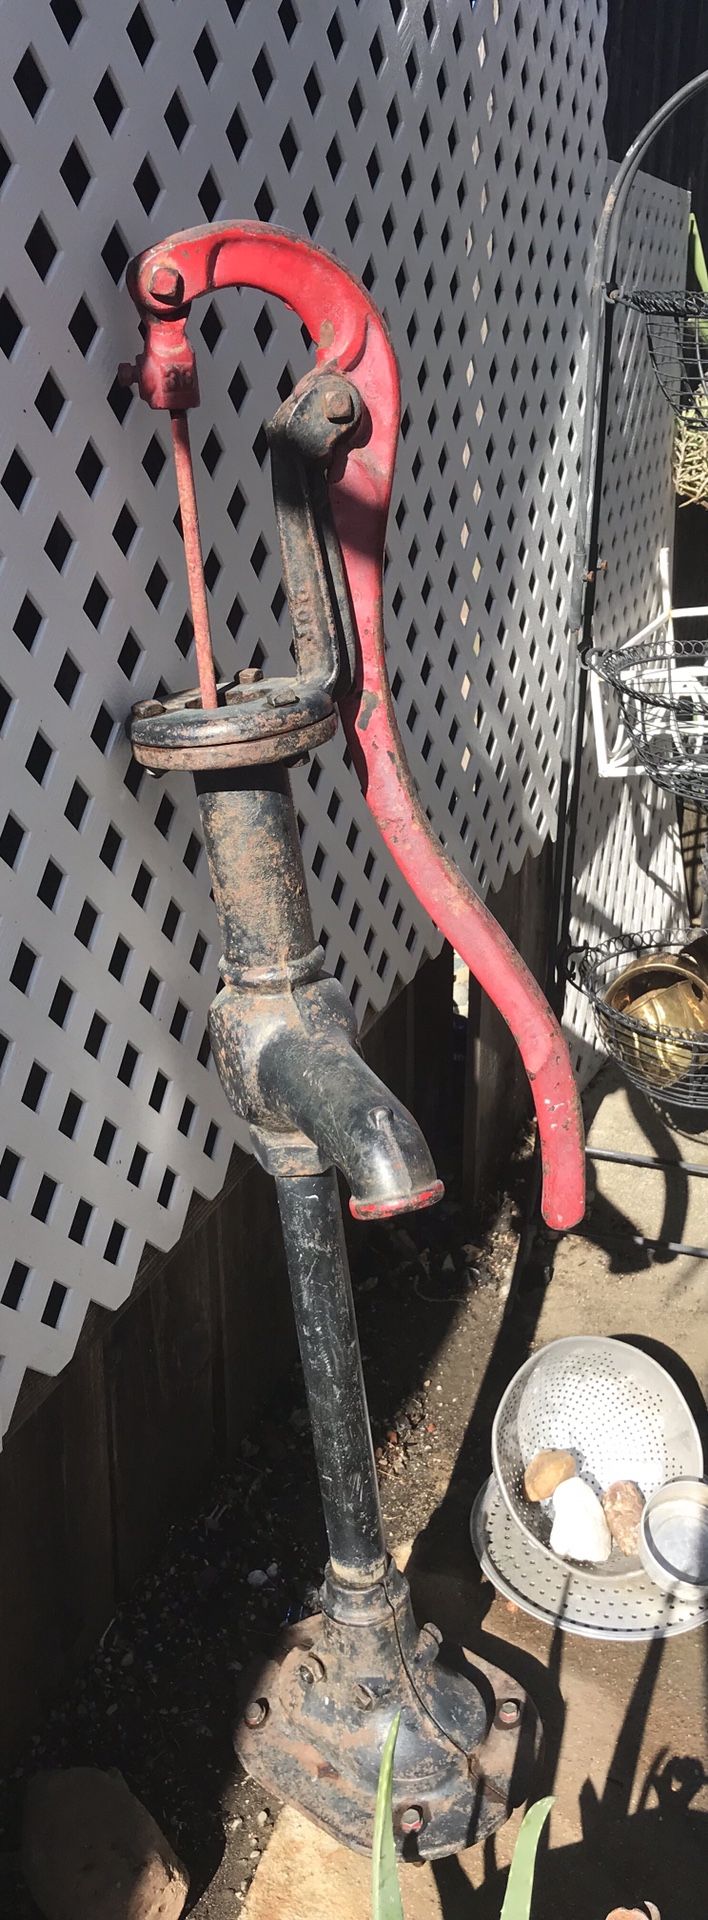 Working Antique Water Pump